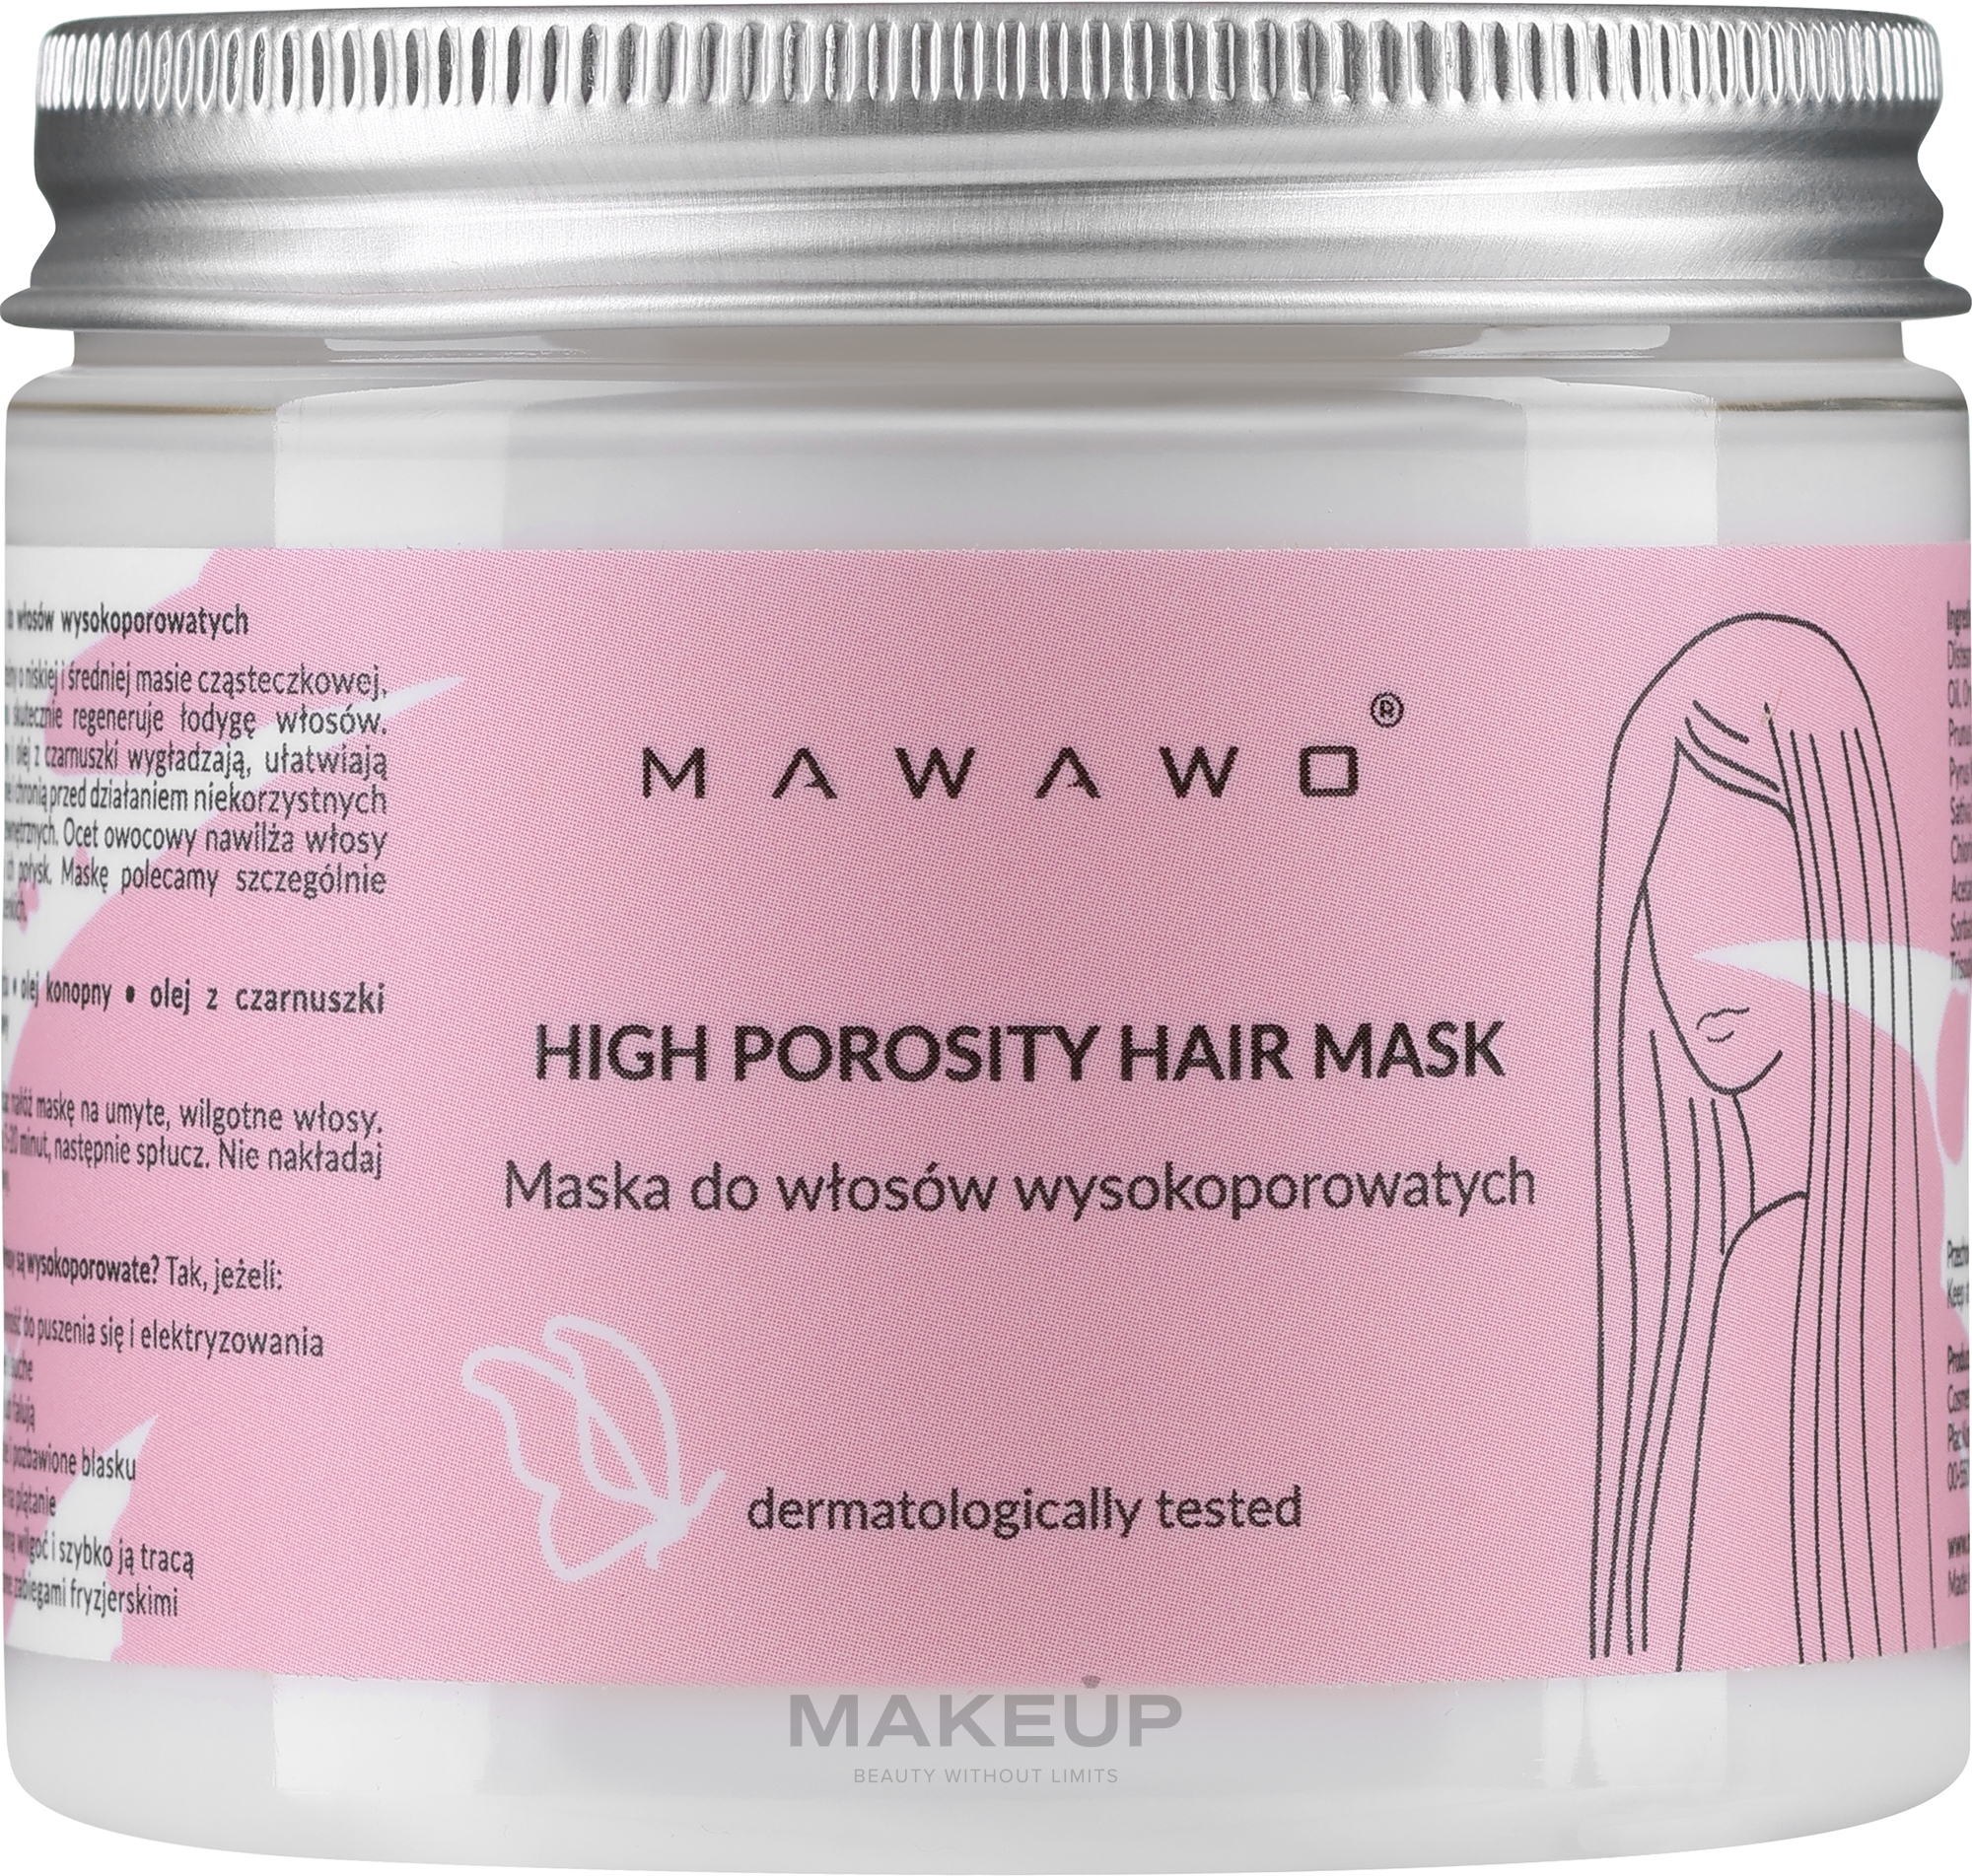 Маска для волос с высокой пористостью - Mawawo High Porosity Hair Mask — фото 200ml